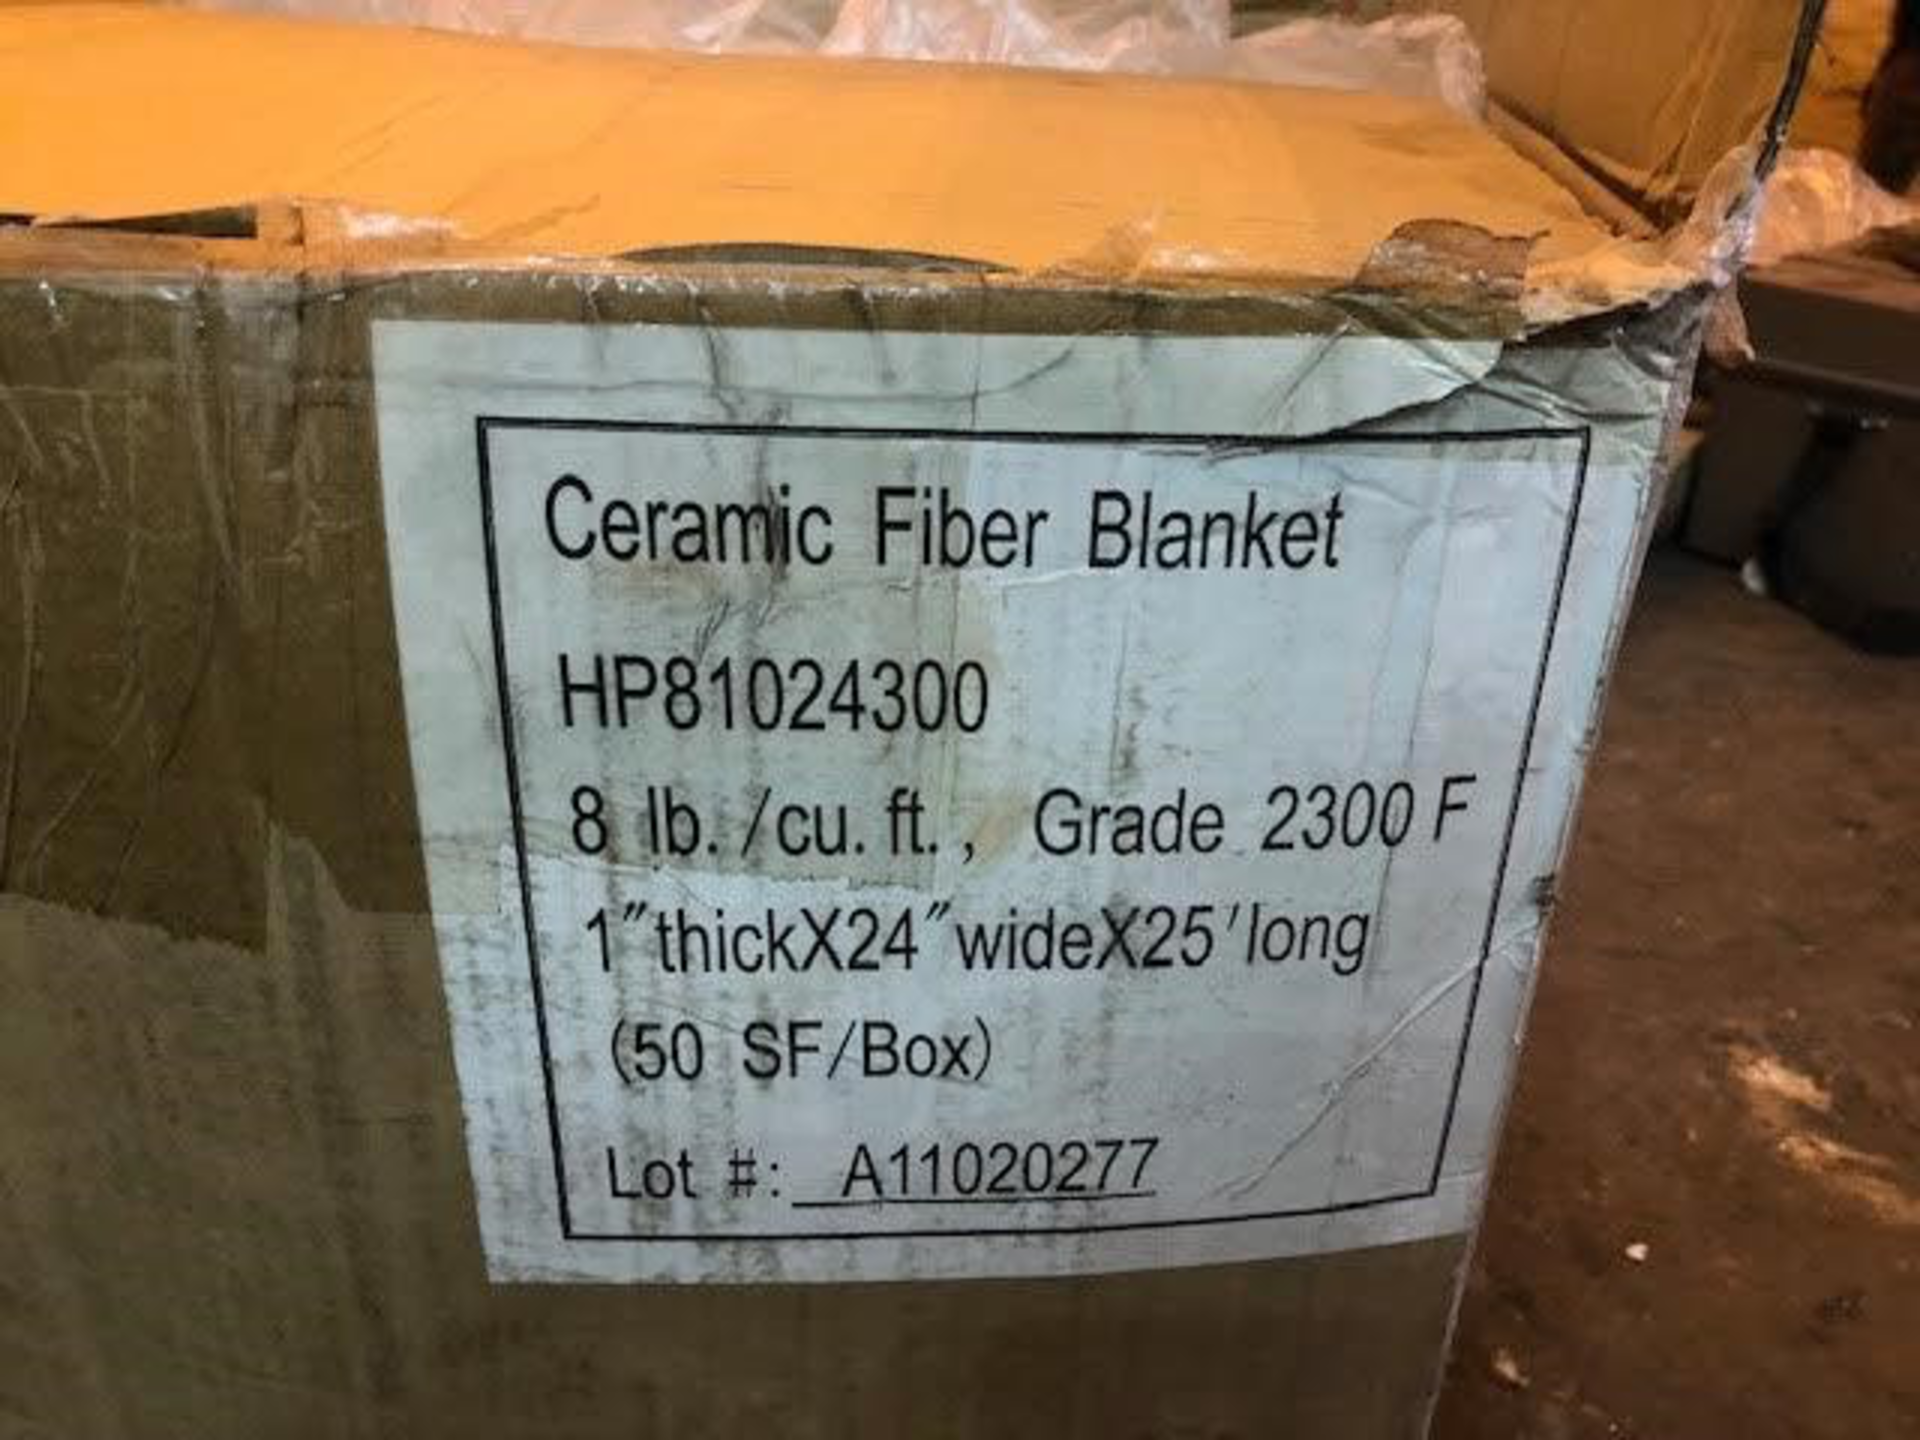 Ceramic Fiber Blanket - Image 2 of 3